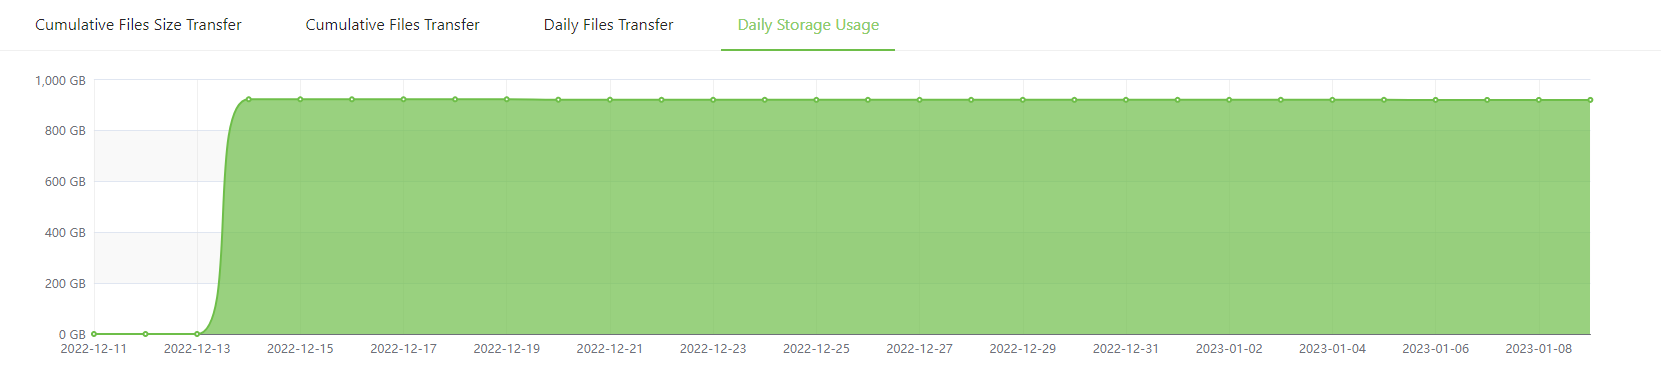 Understanding_Workbench-Daily_storage_usage.png